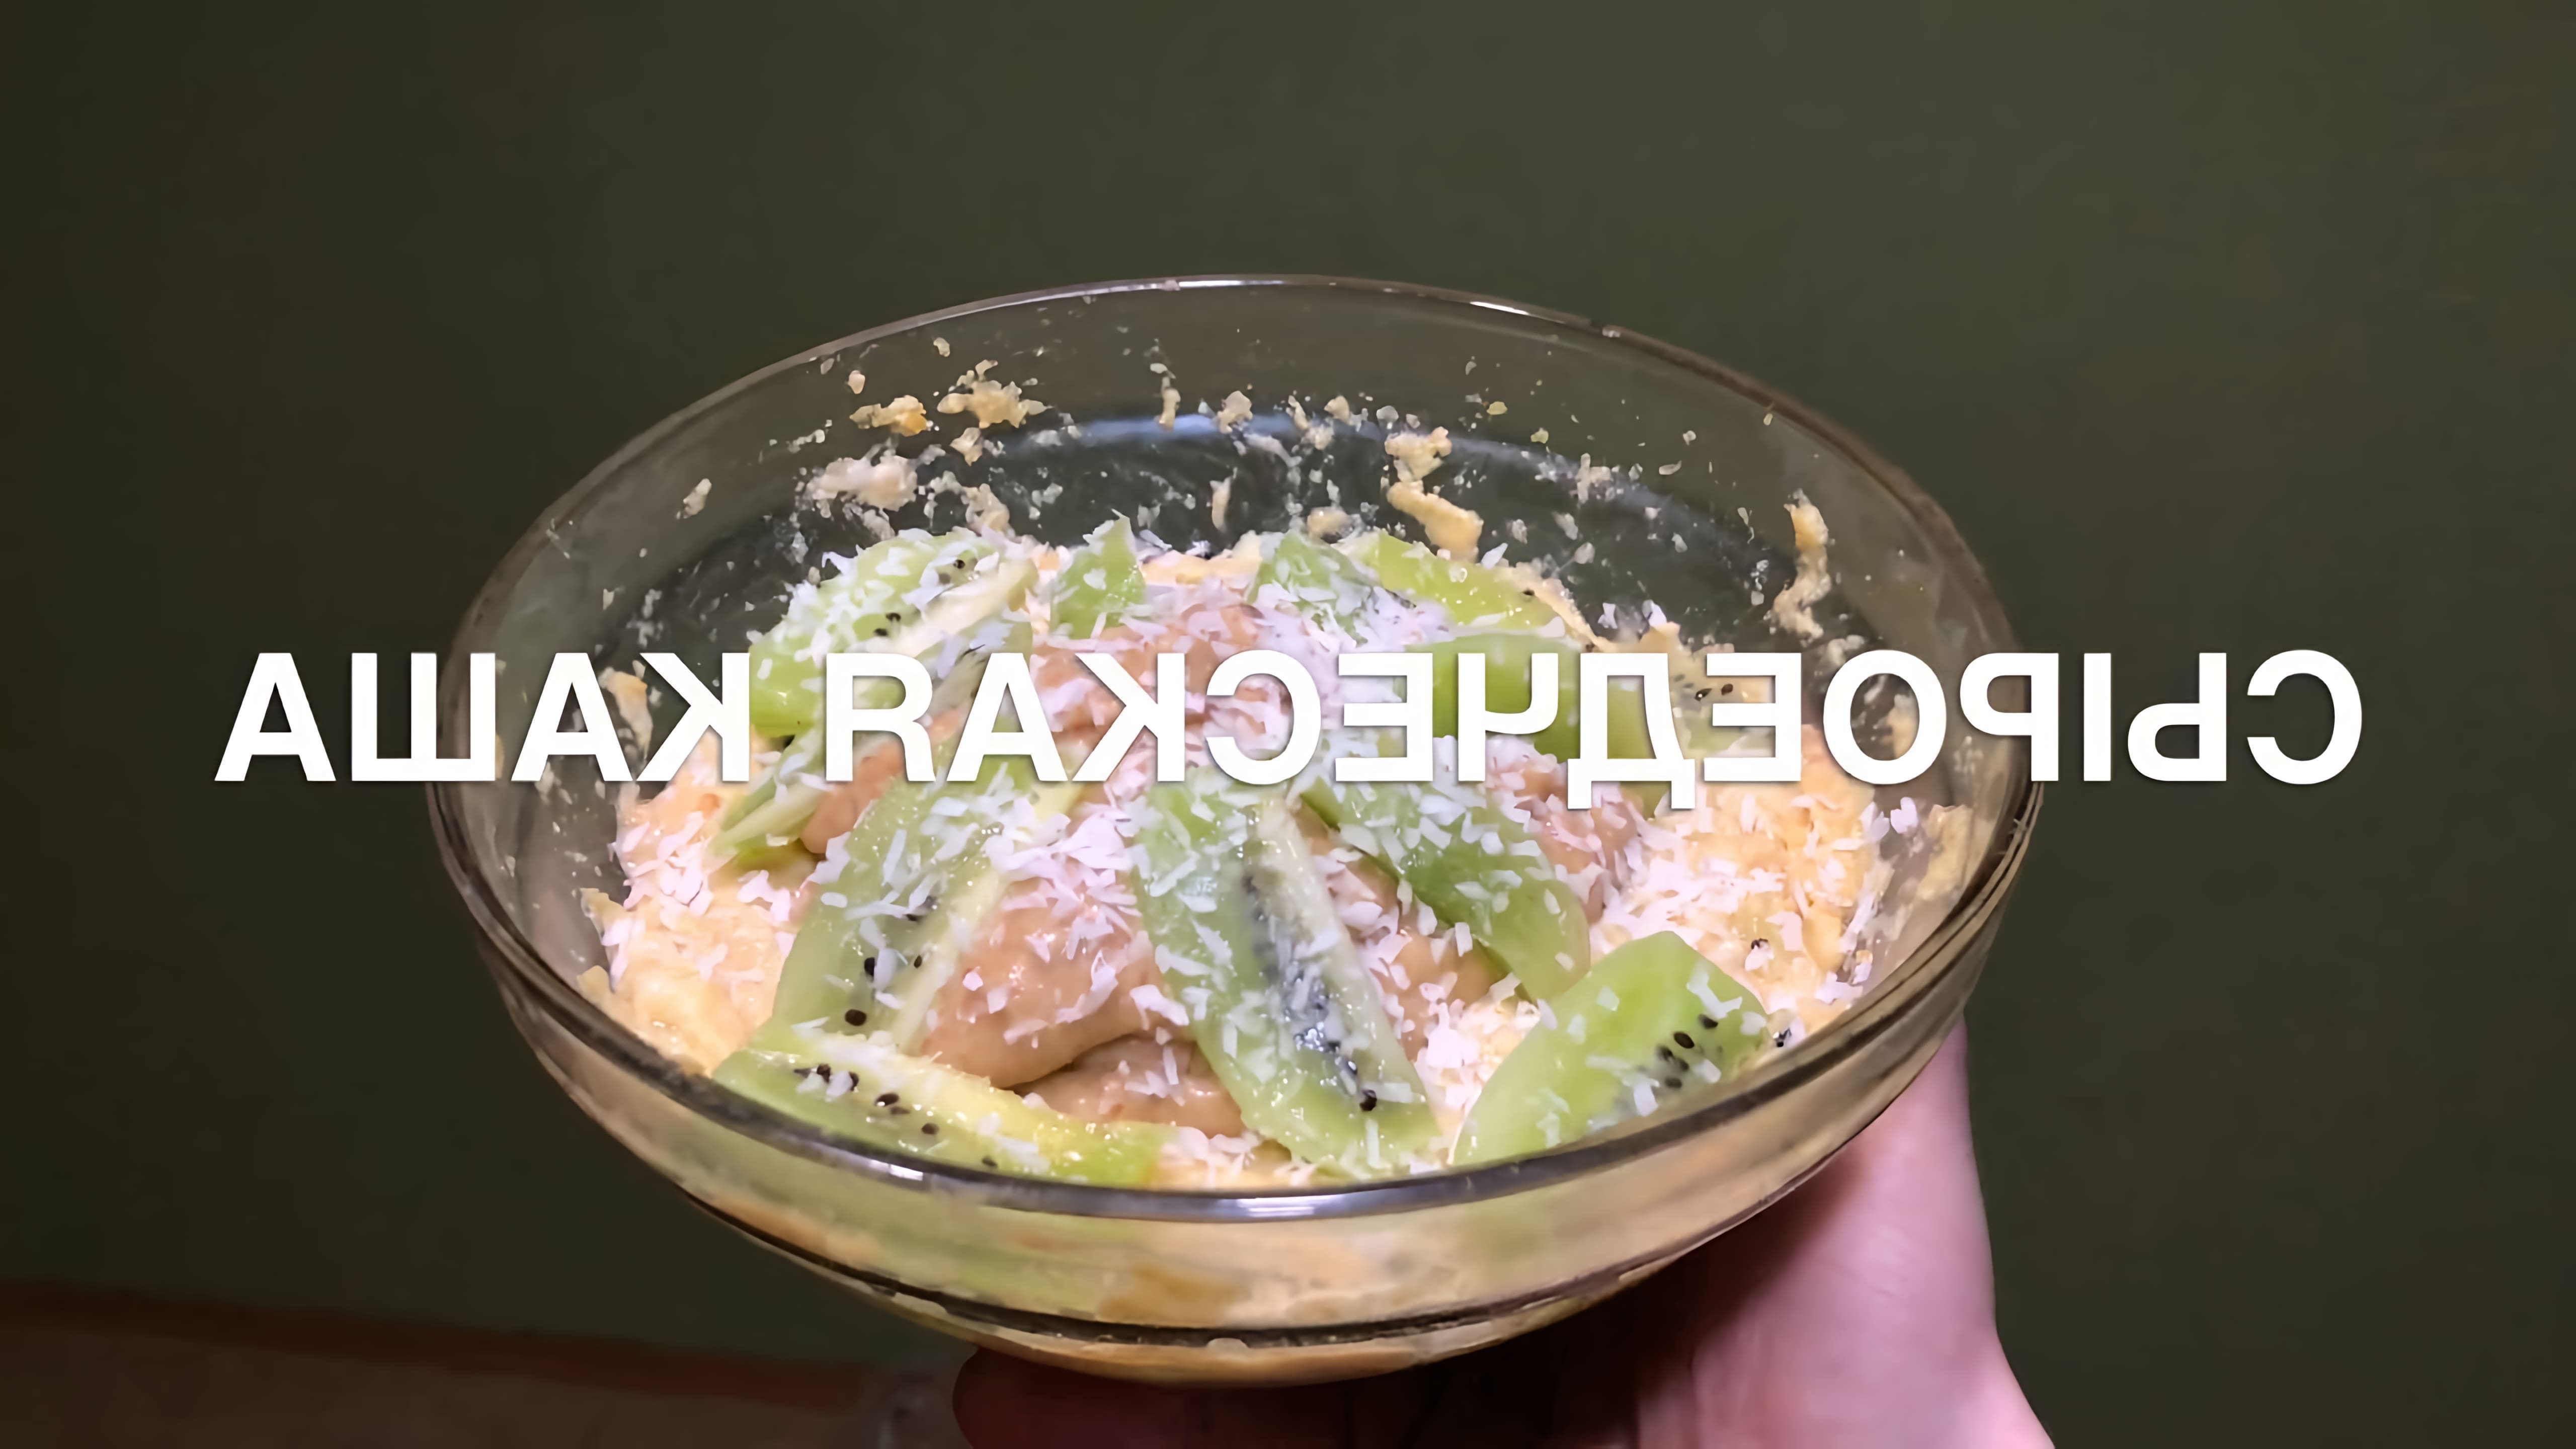 В этом видео демонстрируется рецепт приготовления вкуснейшей сыроедческой каши из льна